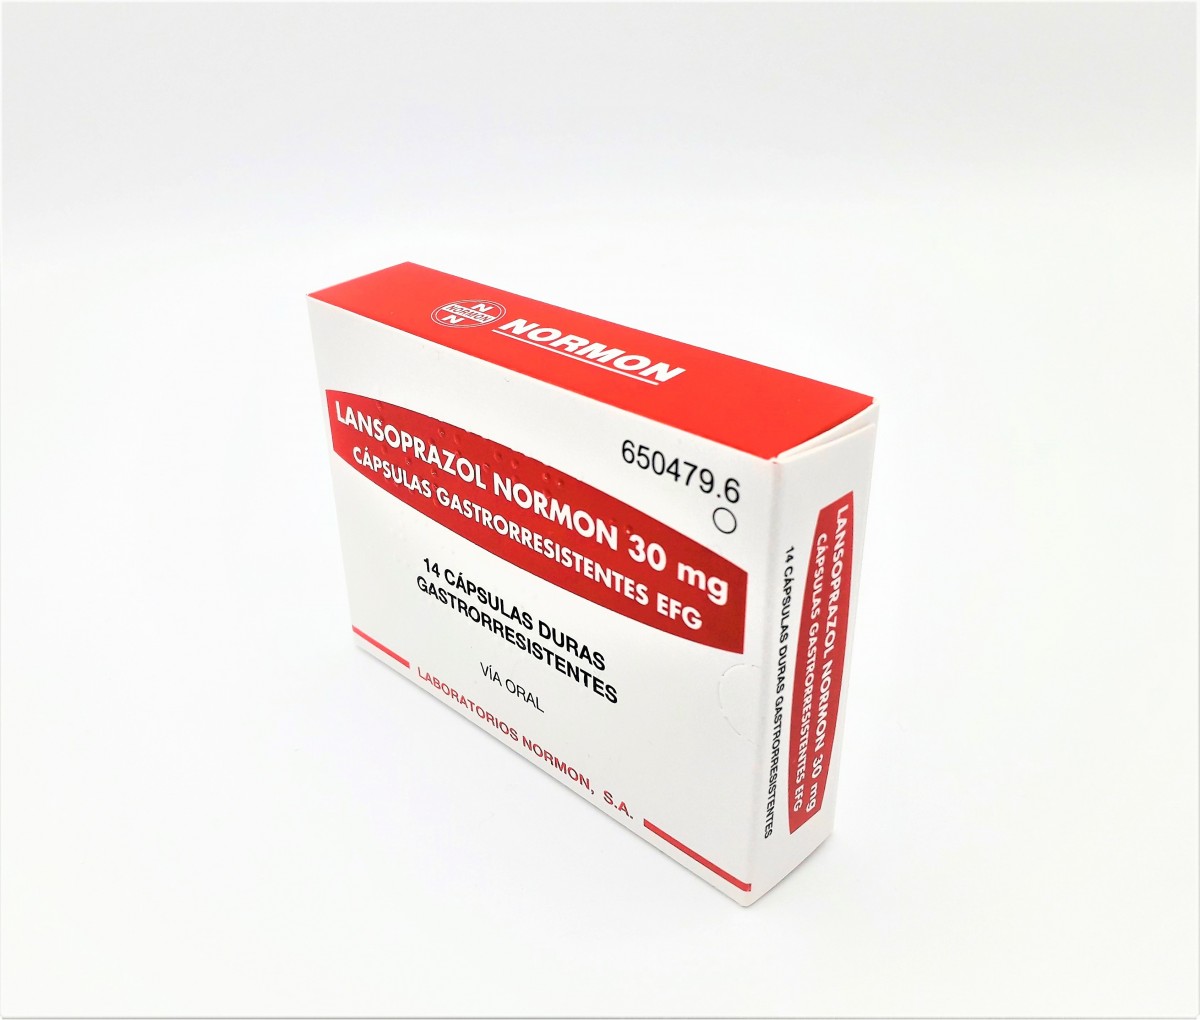 LANSOPRAZOL NORMON 30 mg CAPSULAS GASTRORRESISTENTES EFG,56 capsulas fotografía del envase.